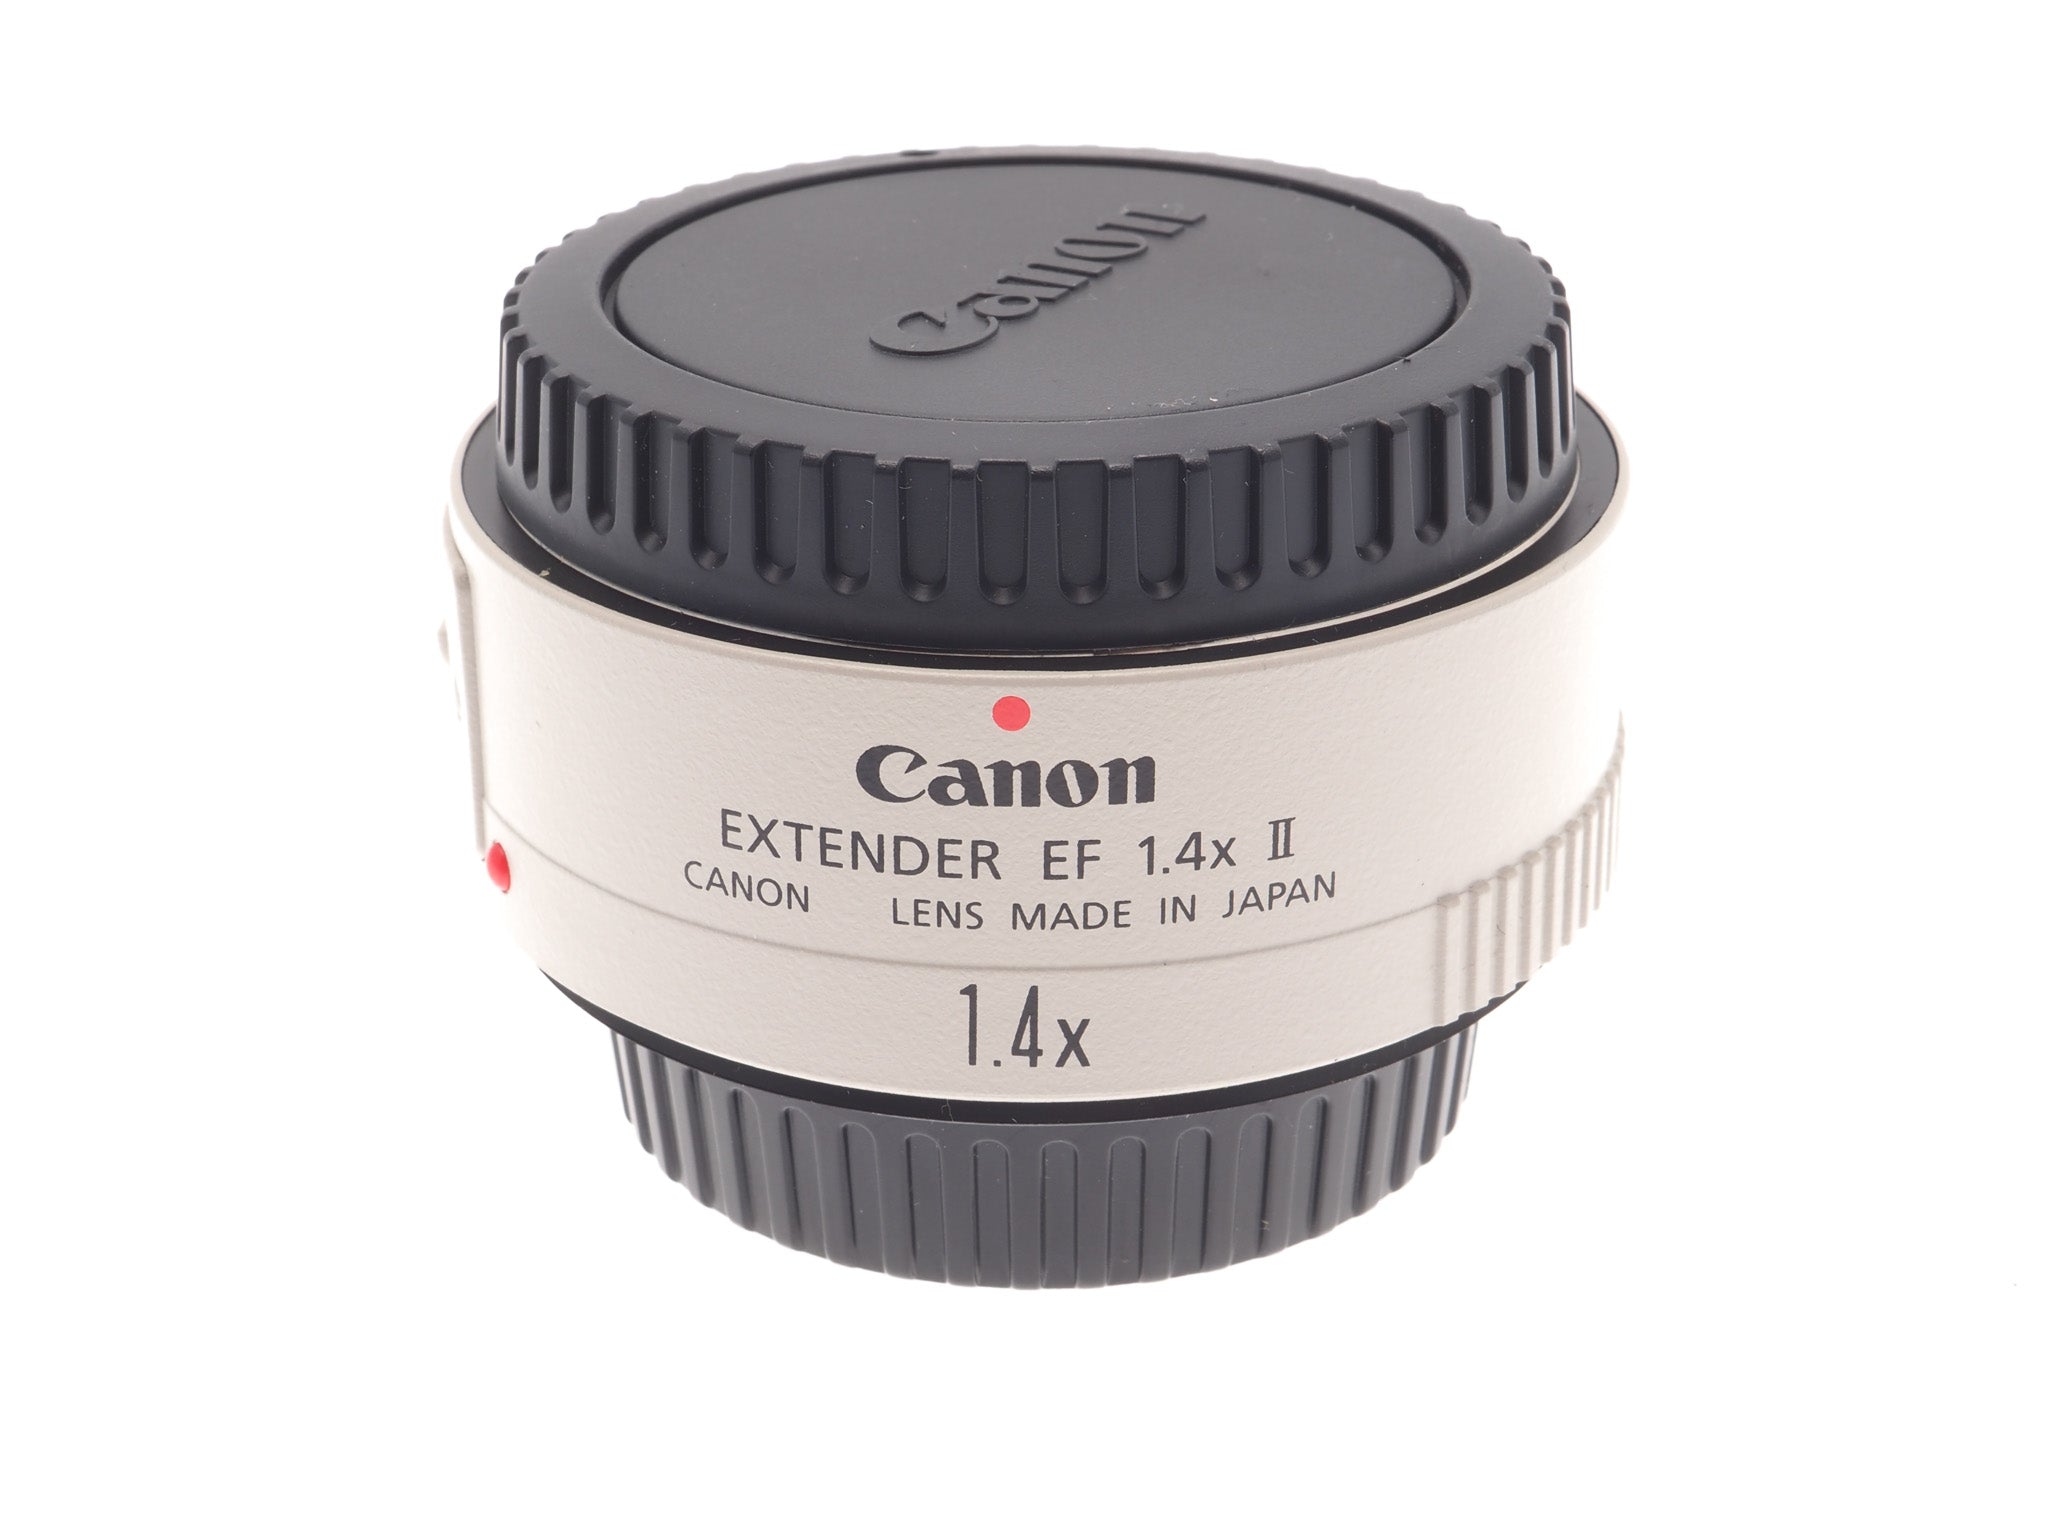 Intentie Creatie woonadres Canon 1.4x EF Extender II – Kamerastore